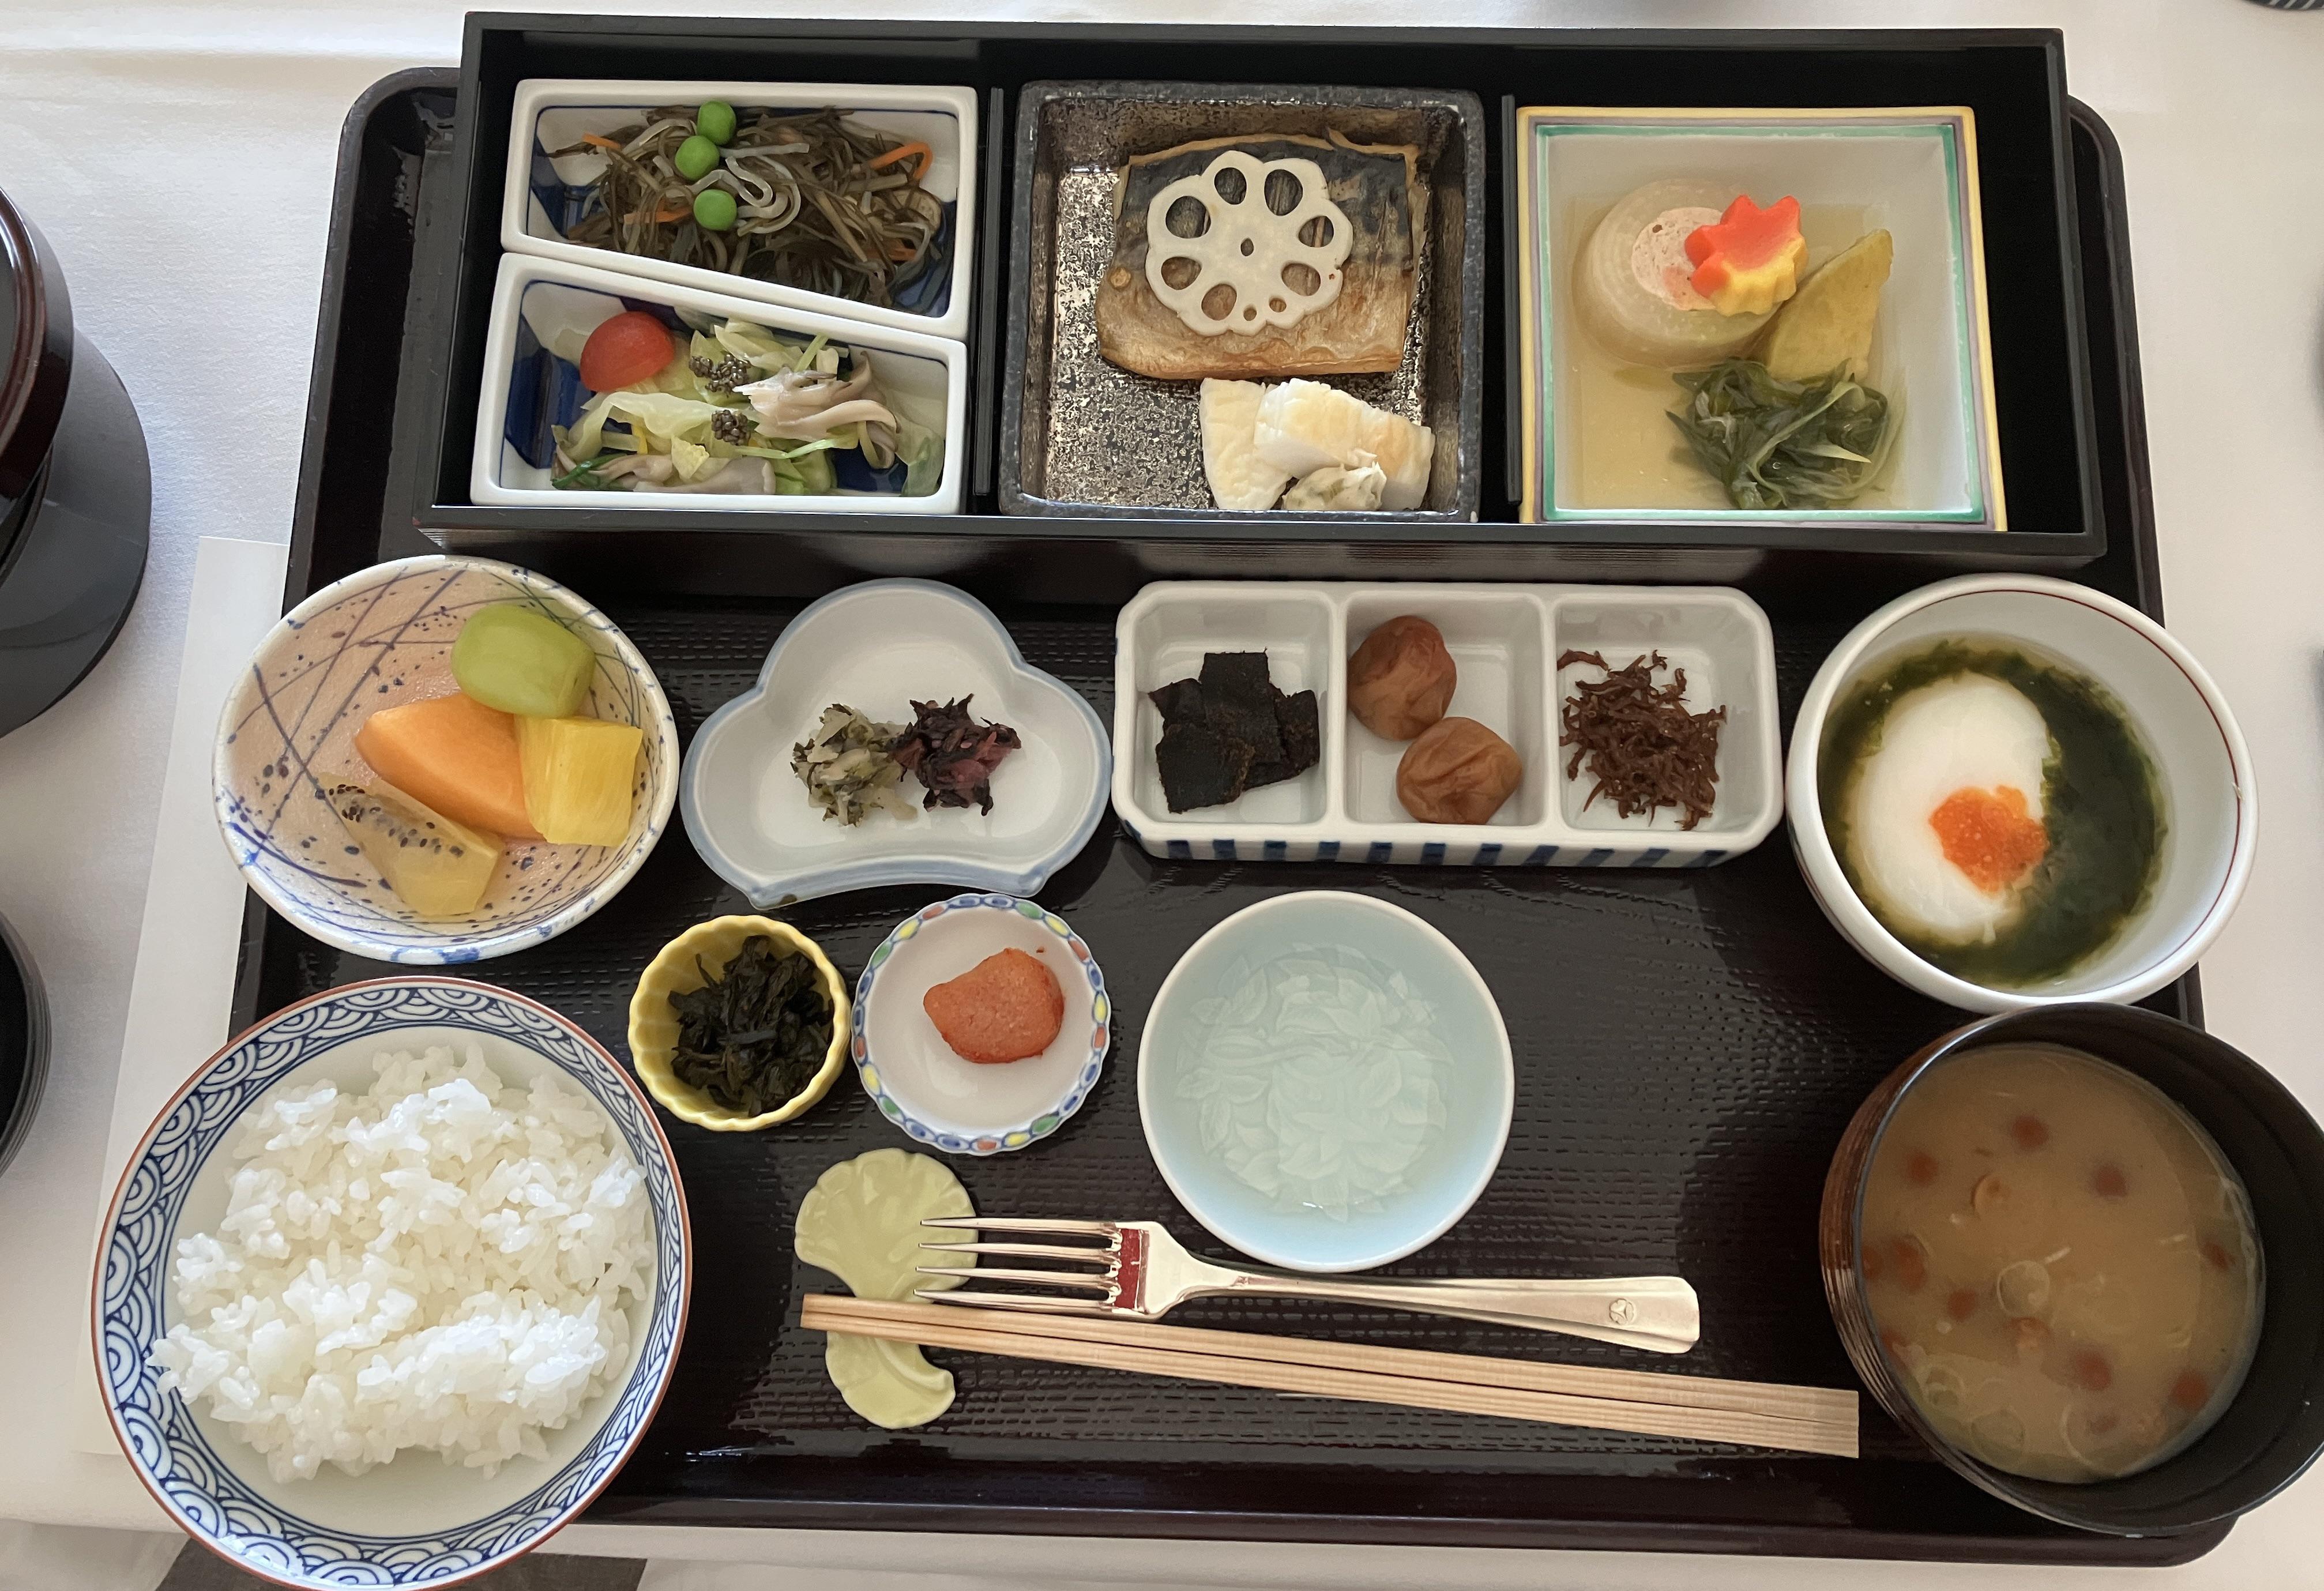 外国人「日本のホテルで食べた最高に美しい和風朝食がこちら」　海外の反応